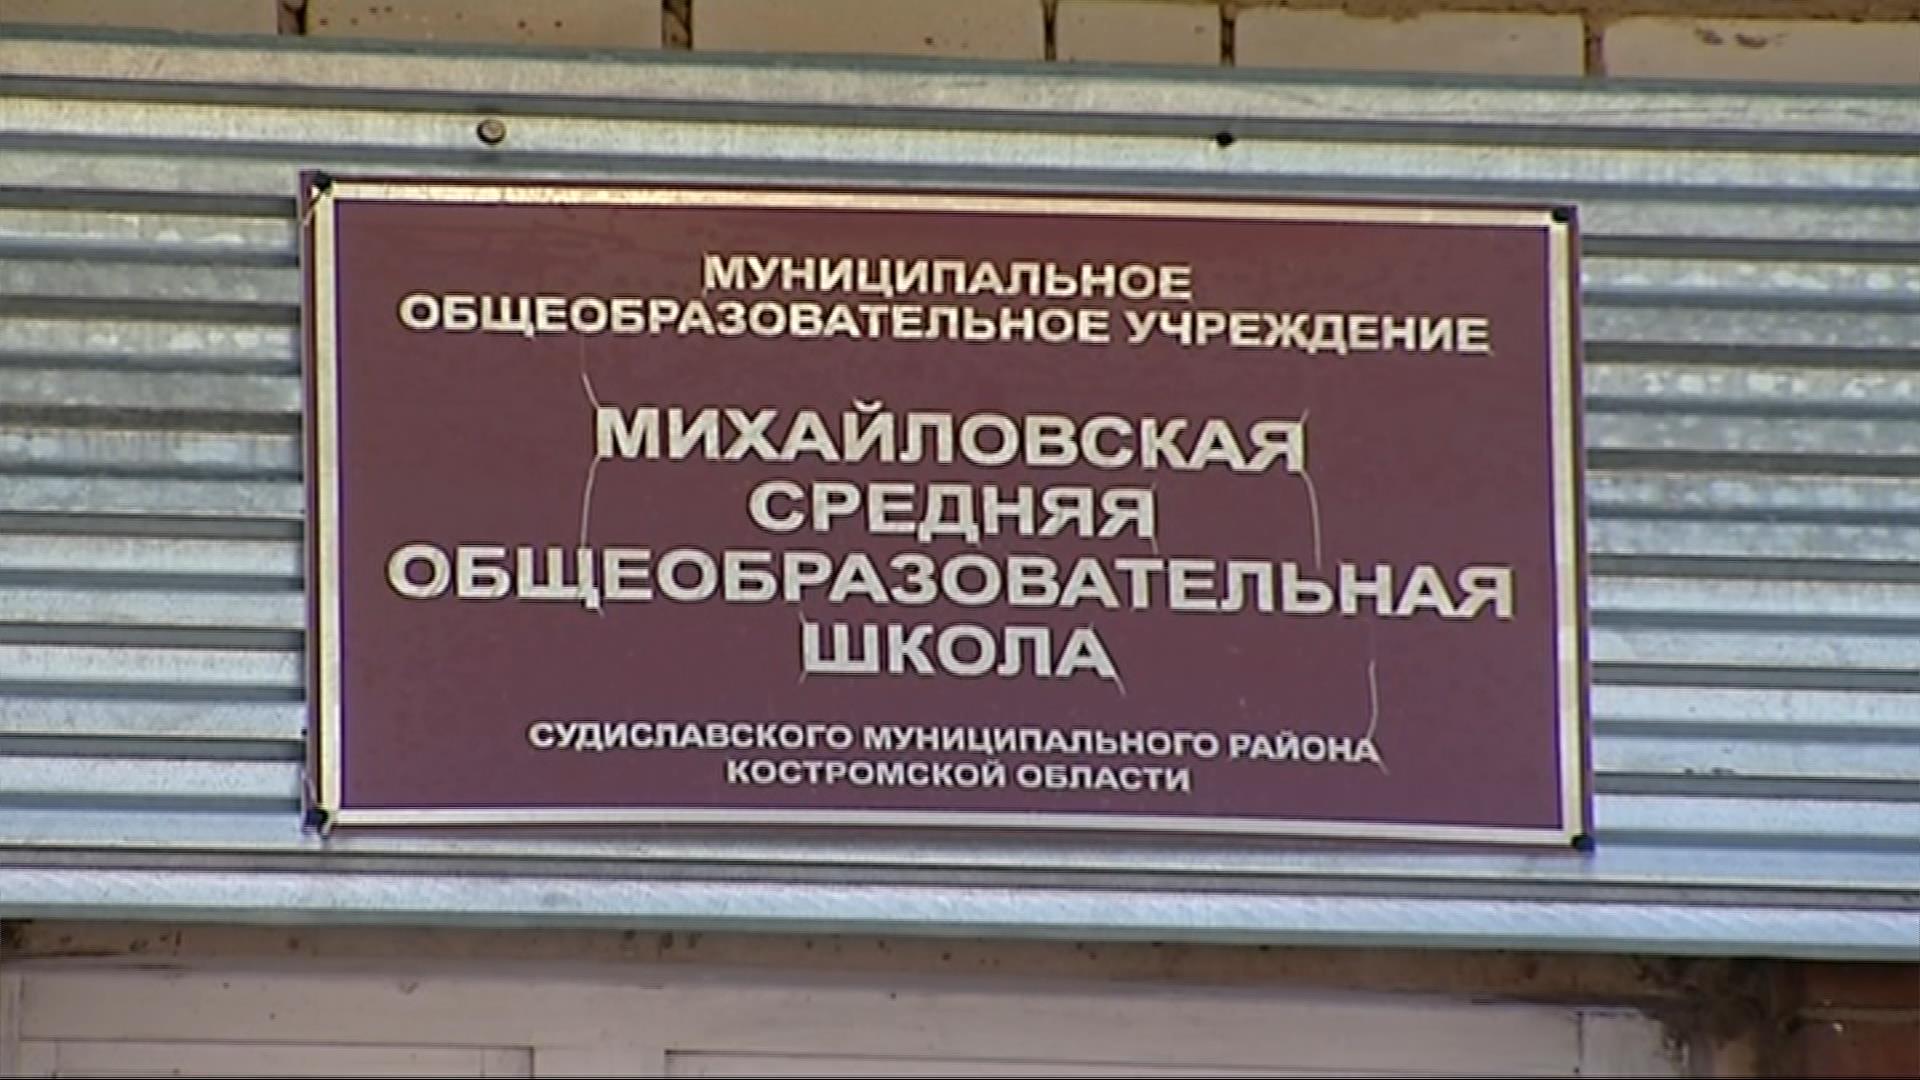 Деревенская школа в Костромской области получит спортплощадку за 800 тысяч рублей